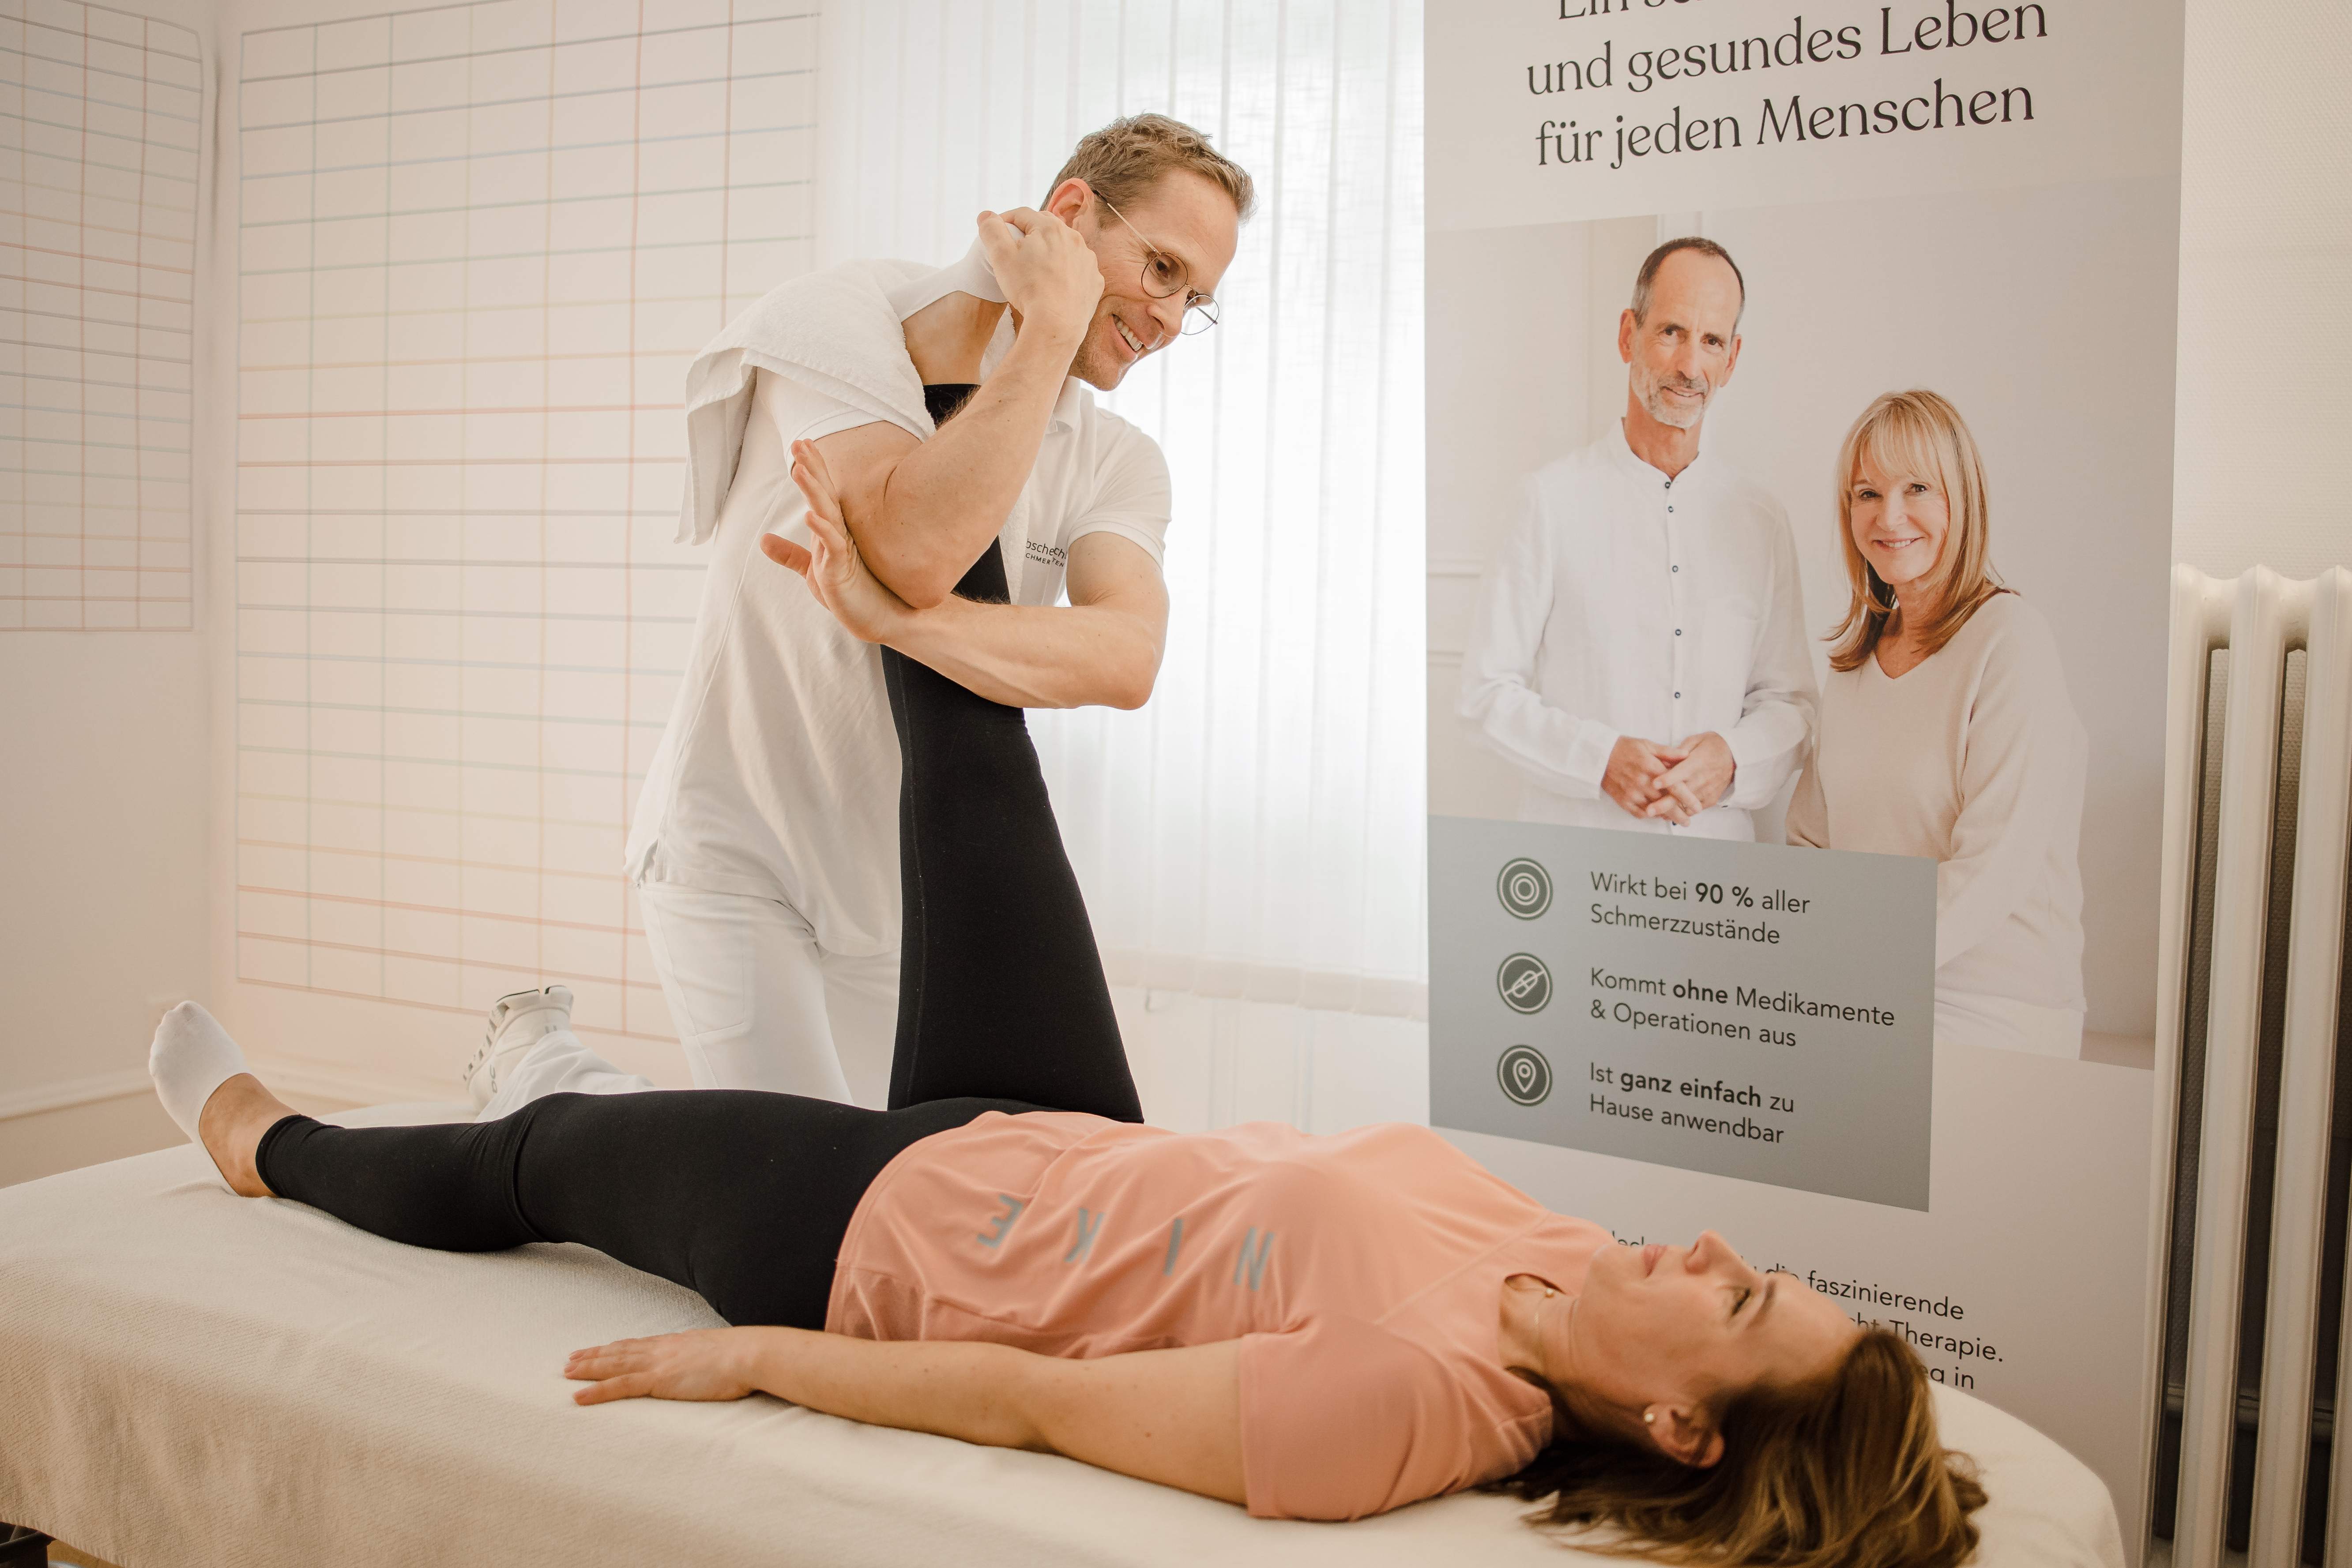 Bewegungstherapie nach Liebscher & Bracht, Therapeut macht die Übung mit dem Patienten